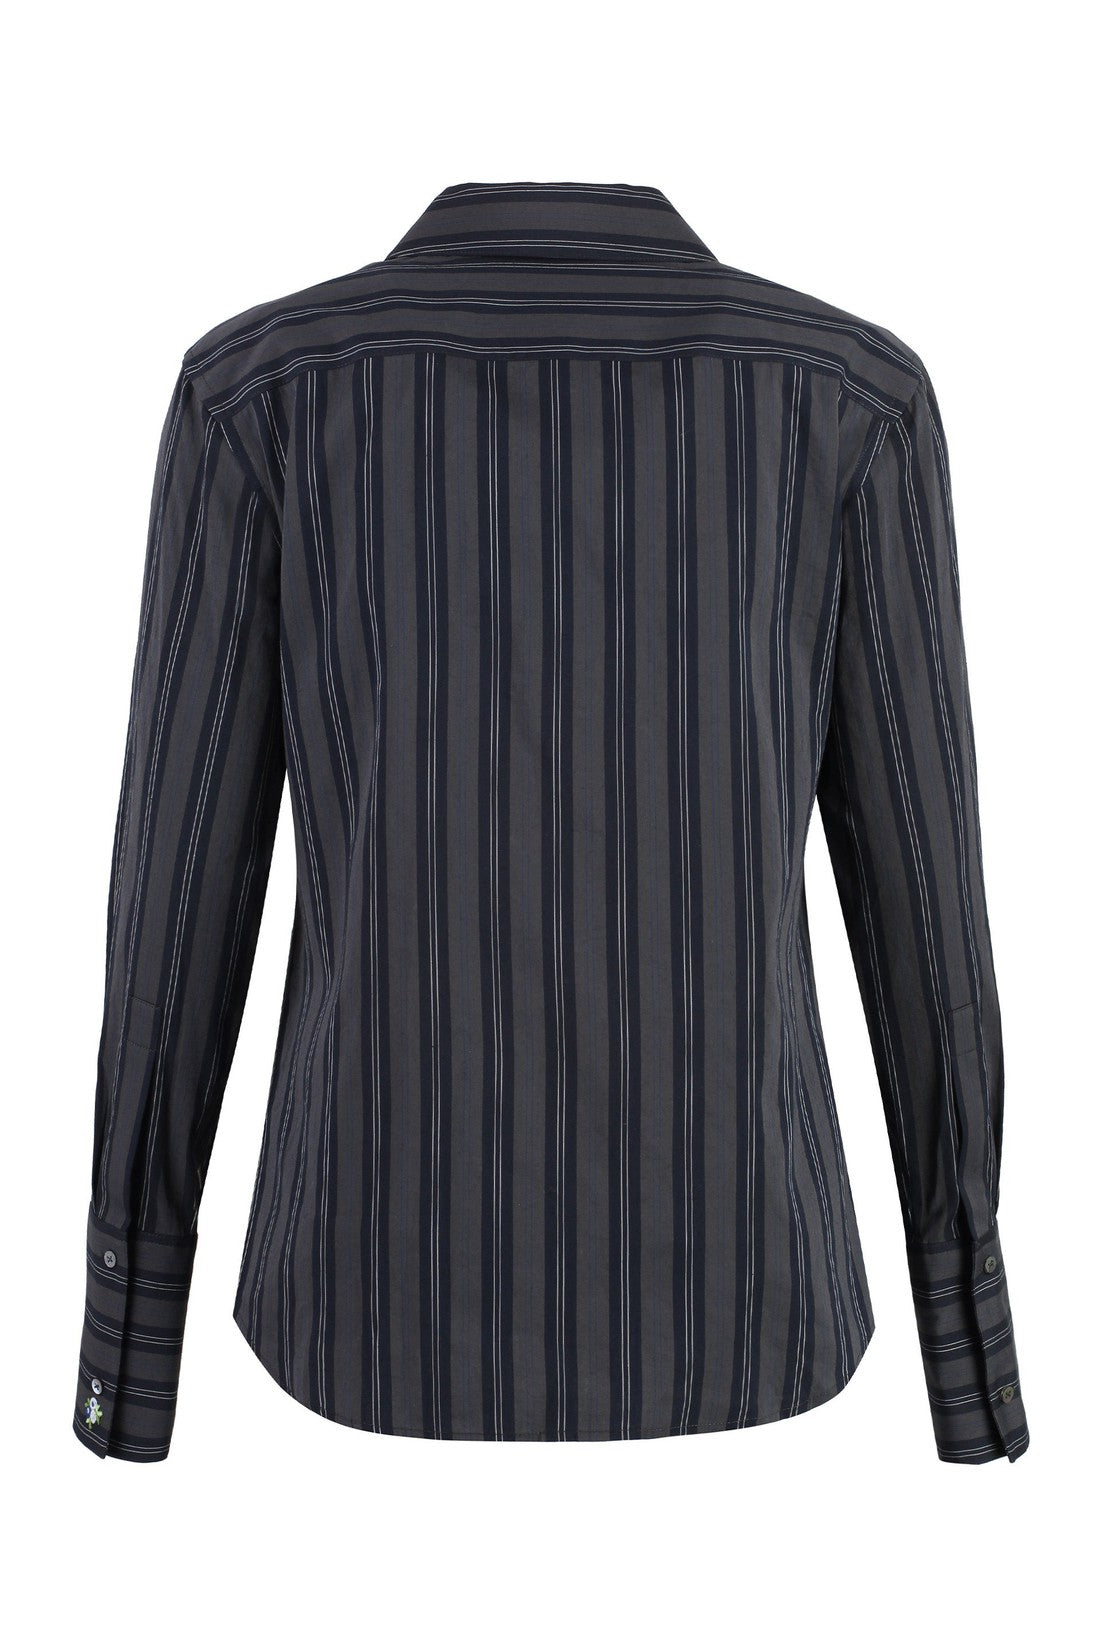 Tory Burch-OUTLET-SALE-Striped cotton shirt-ARCHIVIST